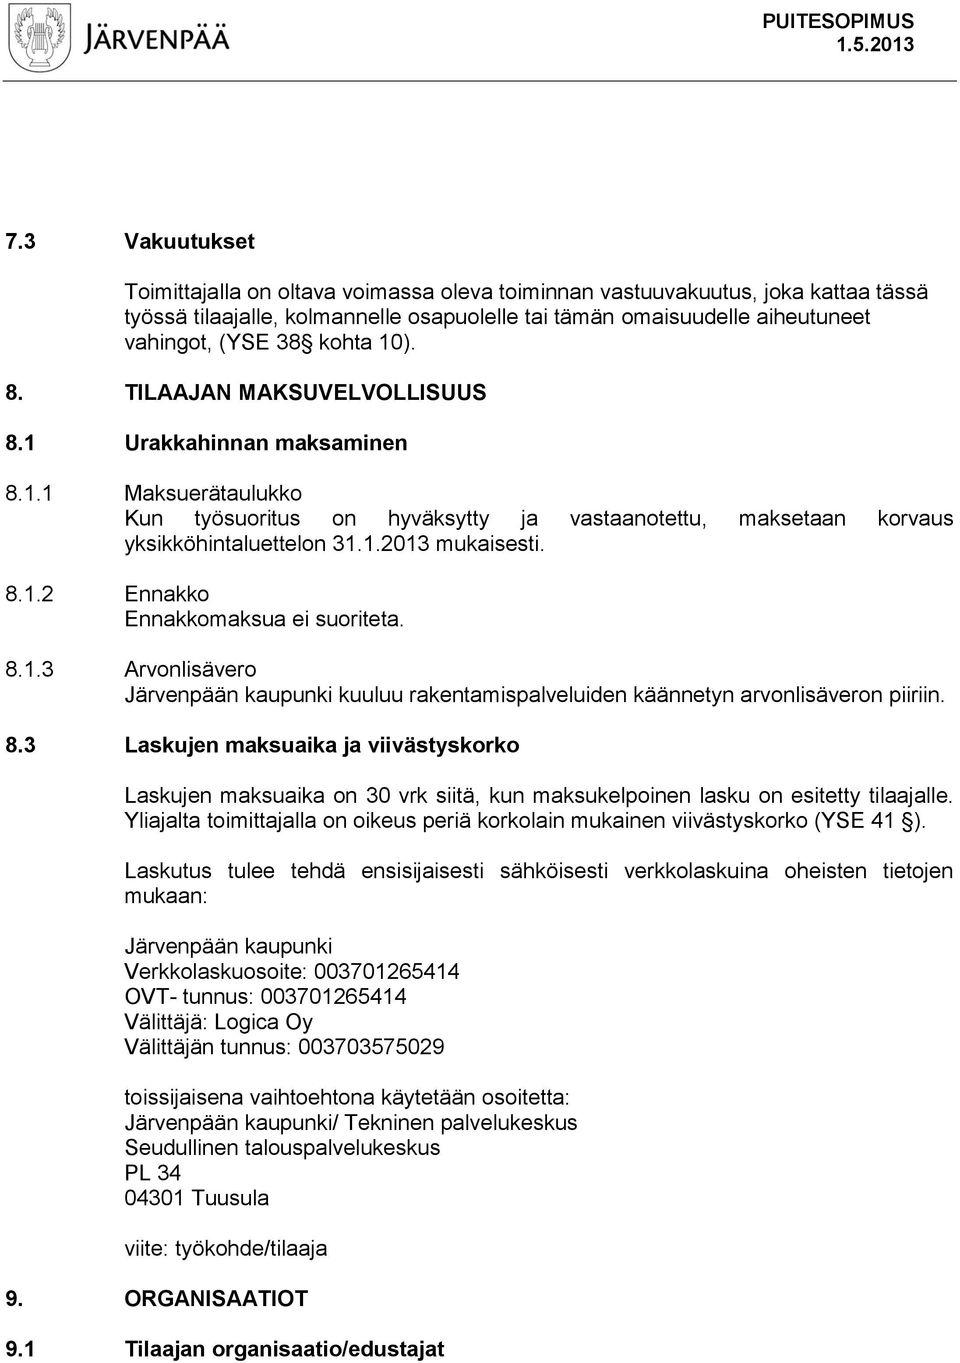 8.1.2 Ennakko Ennakkomaksua ei suoriteta. 8.1.3 Arvonlisävero Järvenpään kaupunki kuuluu rakentamispalveluiden käännetyn arvonlisäveron piiriin. 8.3 Laskujen maksuaika ja viivästyskorko Laskujen maksuaika on 30 vrk siitä, kun maksukelpoinen lasku on esitetty tilaajalle.